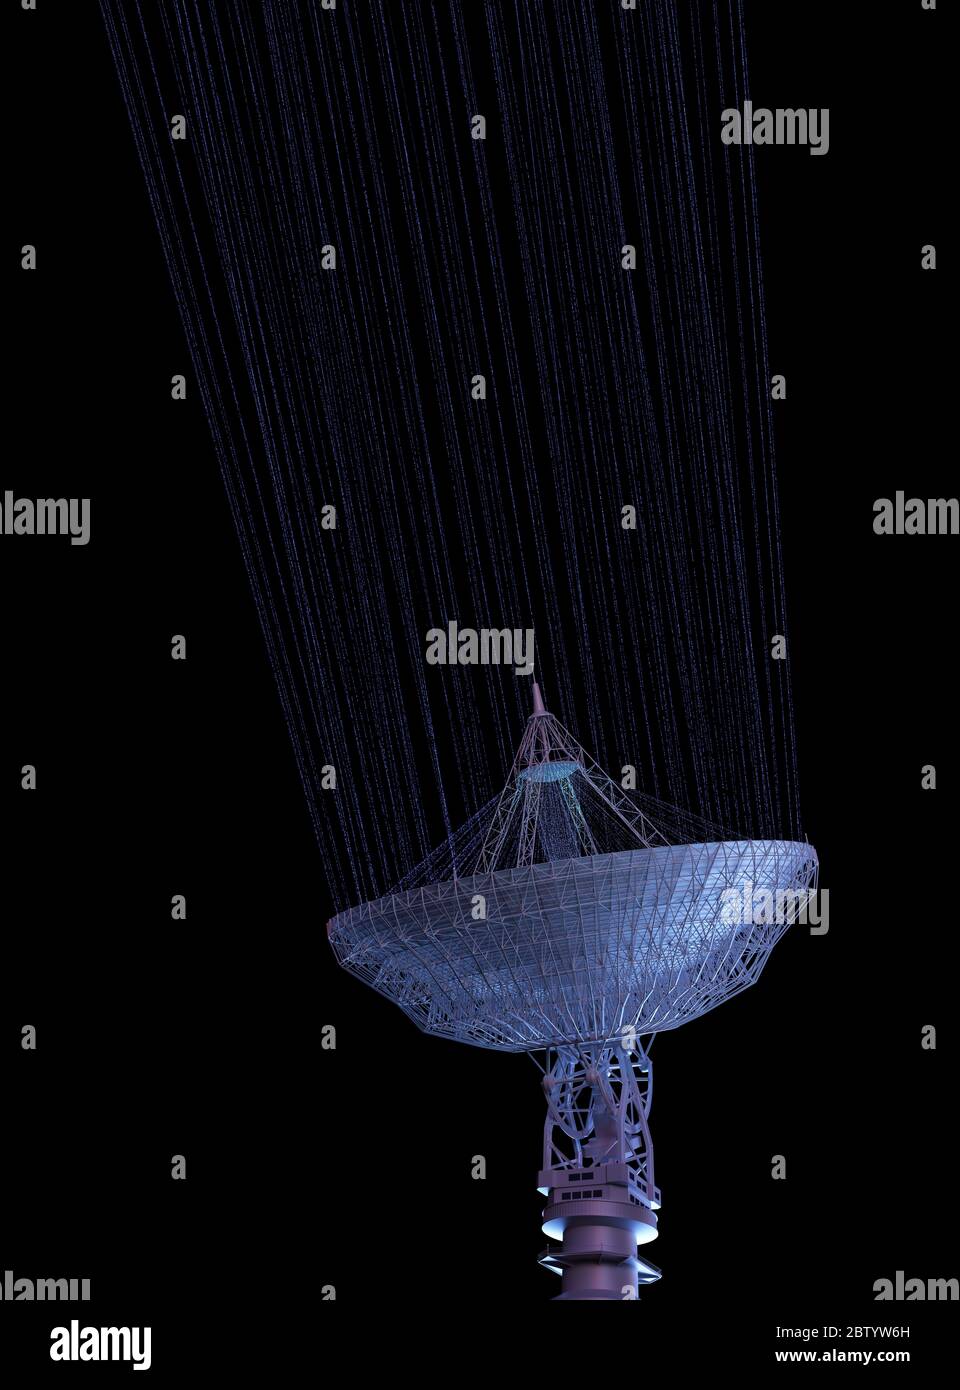 Antena satélite enorme para la comunicación y la recepción de señal fuera del planeta Tierra. Ilustración 3D con trazado de recorte incluido. Foto de stock